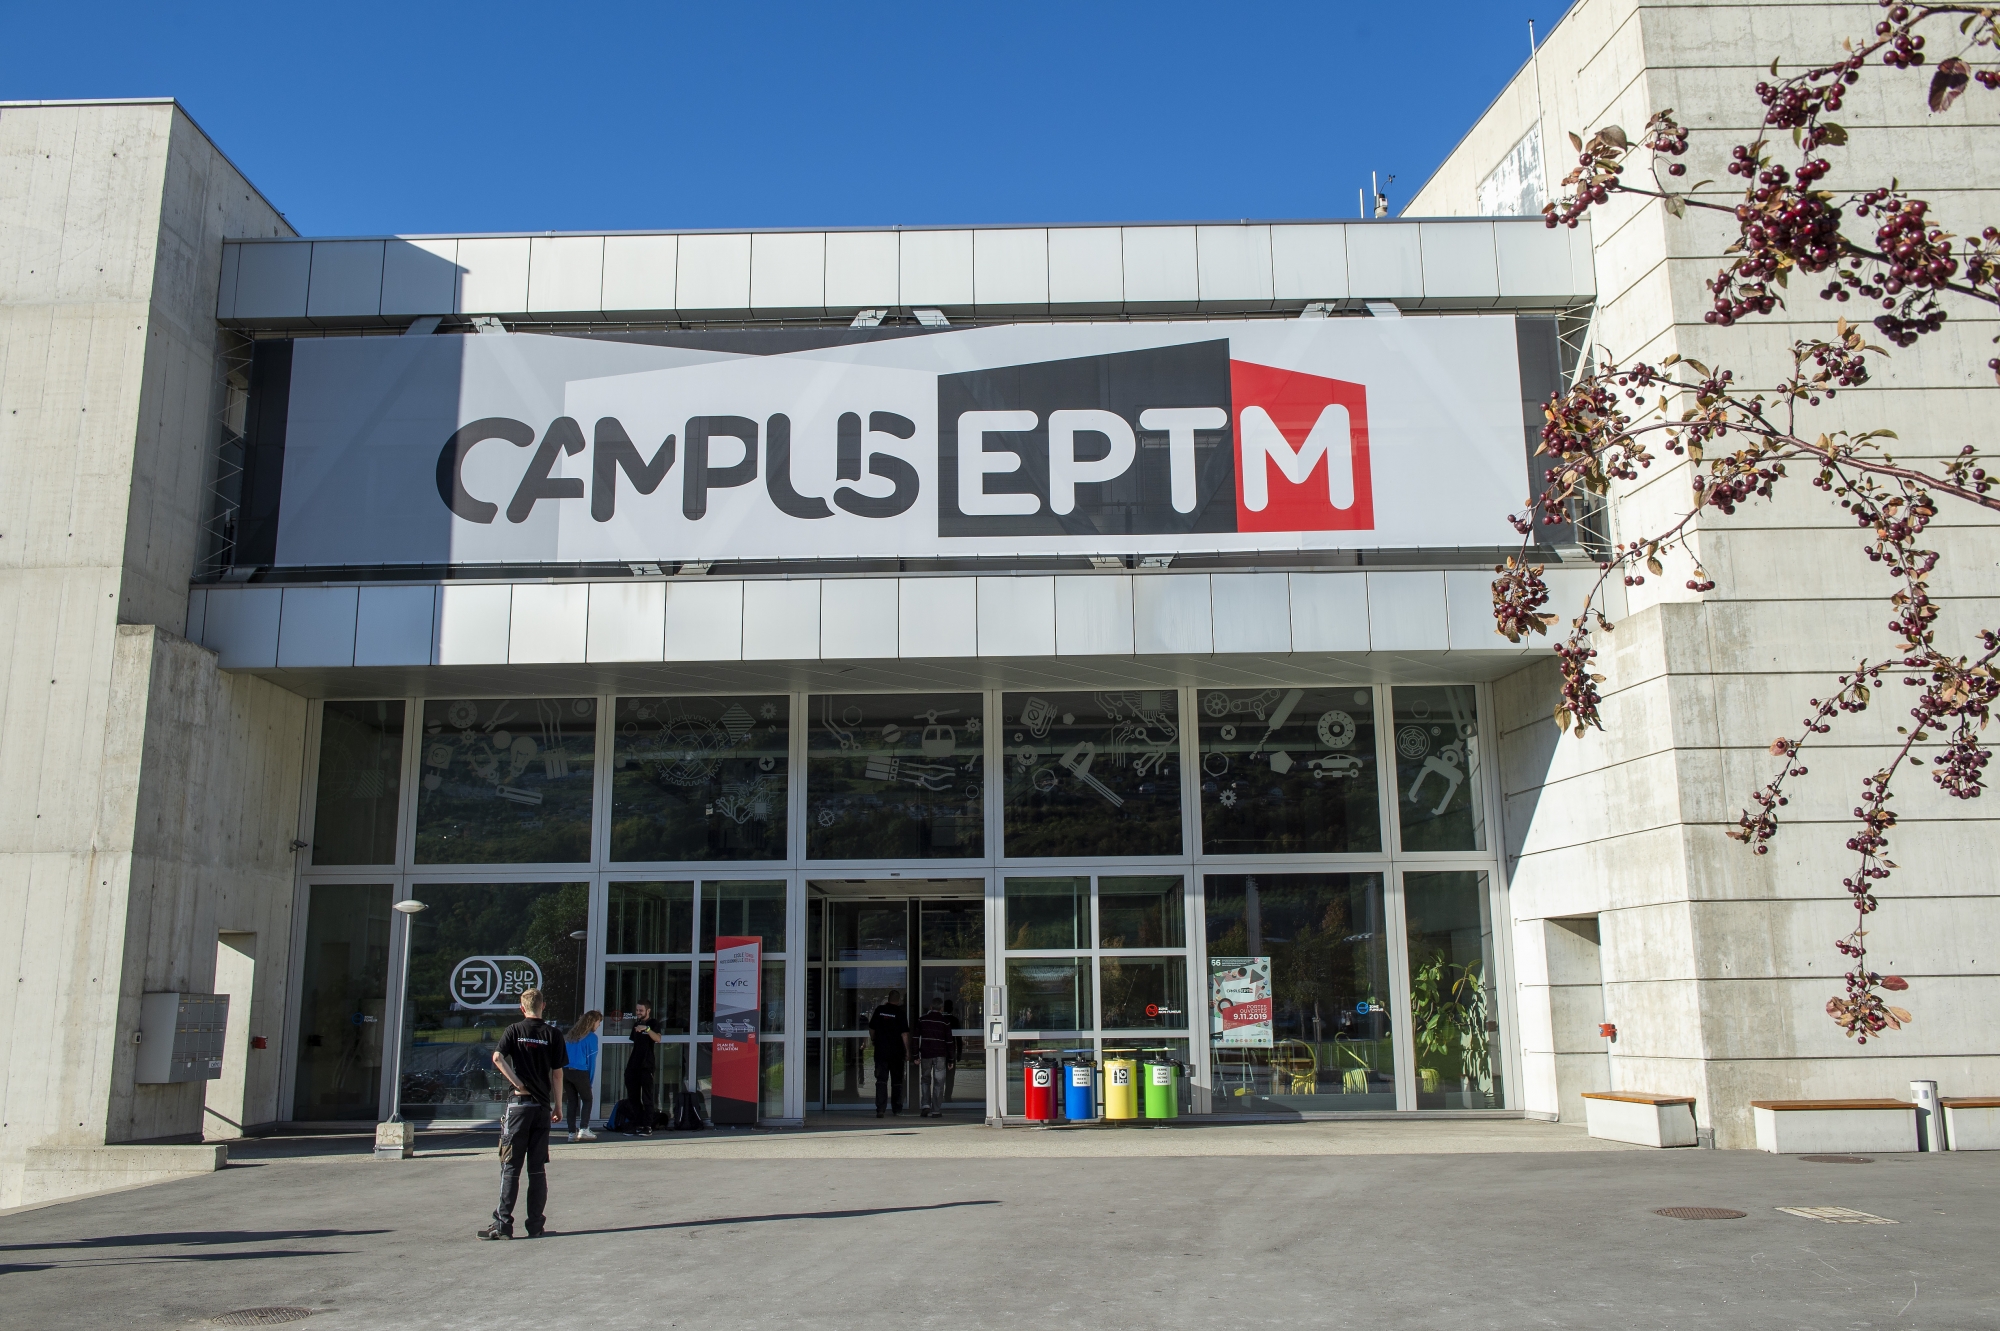 Les travaux d'extension et de transformation du Campus EPTM auront duré trois ans.